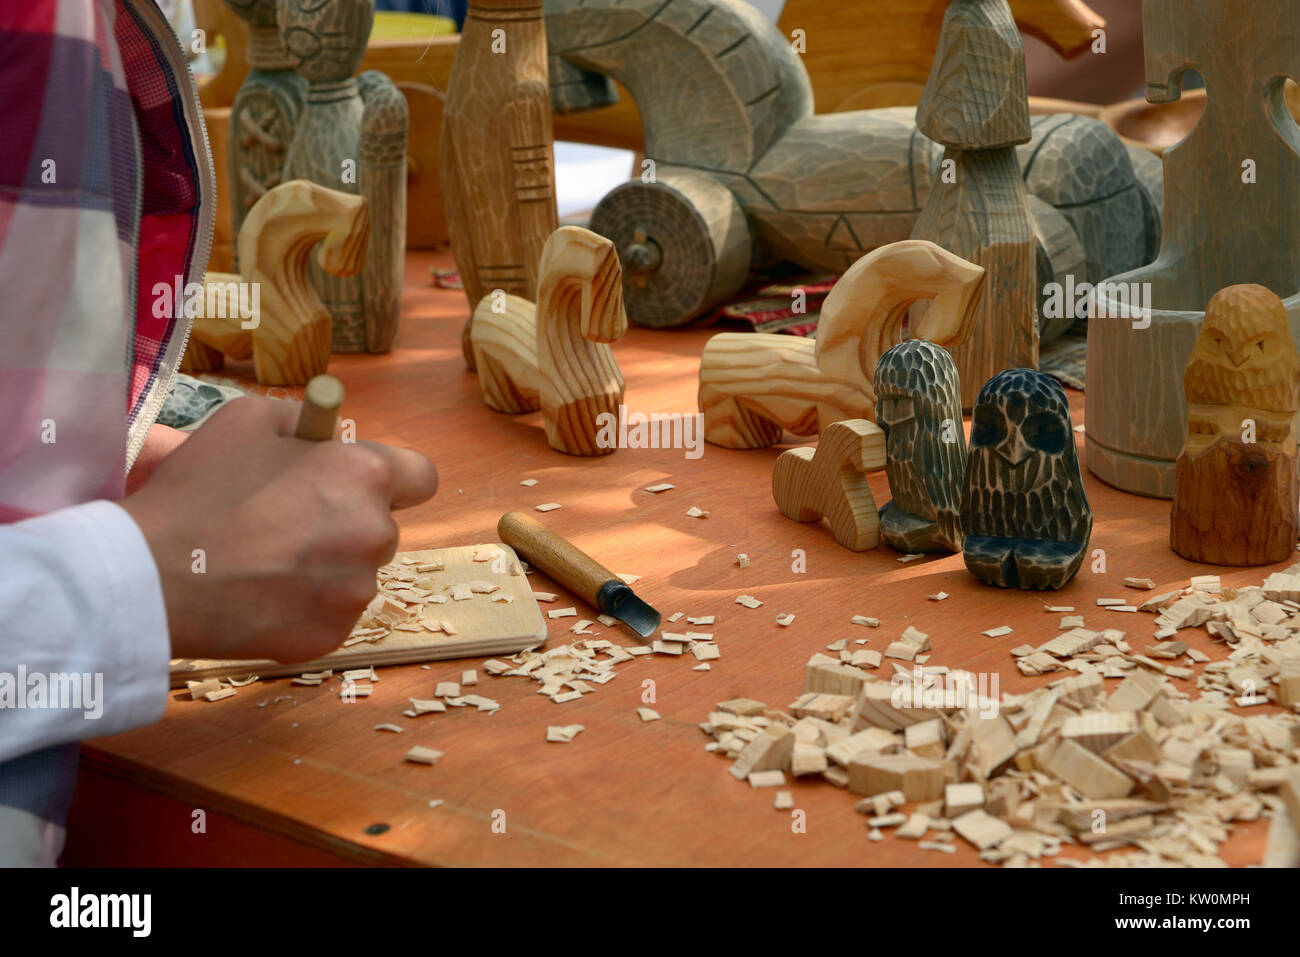 San Petersburgo, Rusia - Mayo 22, 2016: Master Class de talla de madera en un contador con self-made juguetes de madera en estilo nacional en una feria Foto de stock